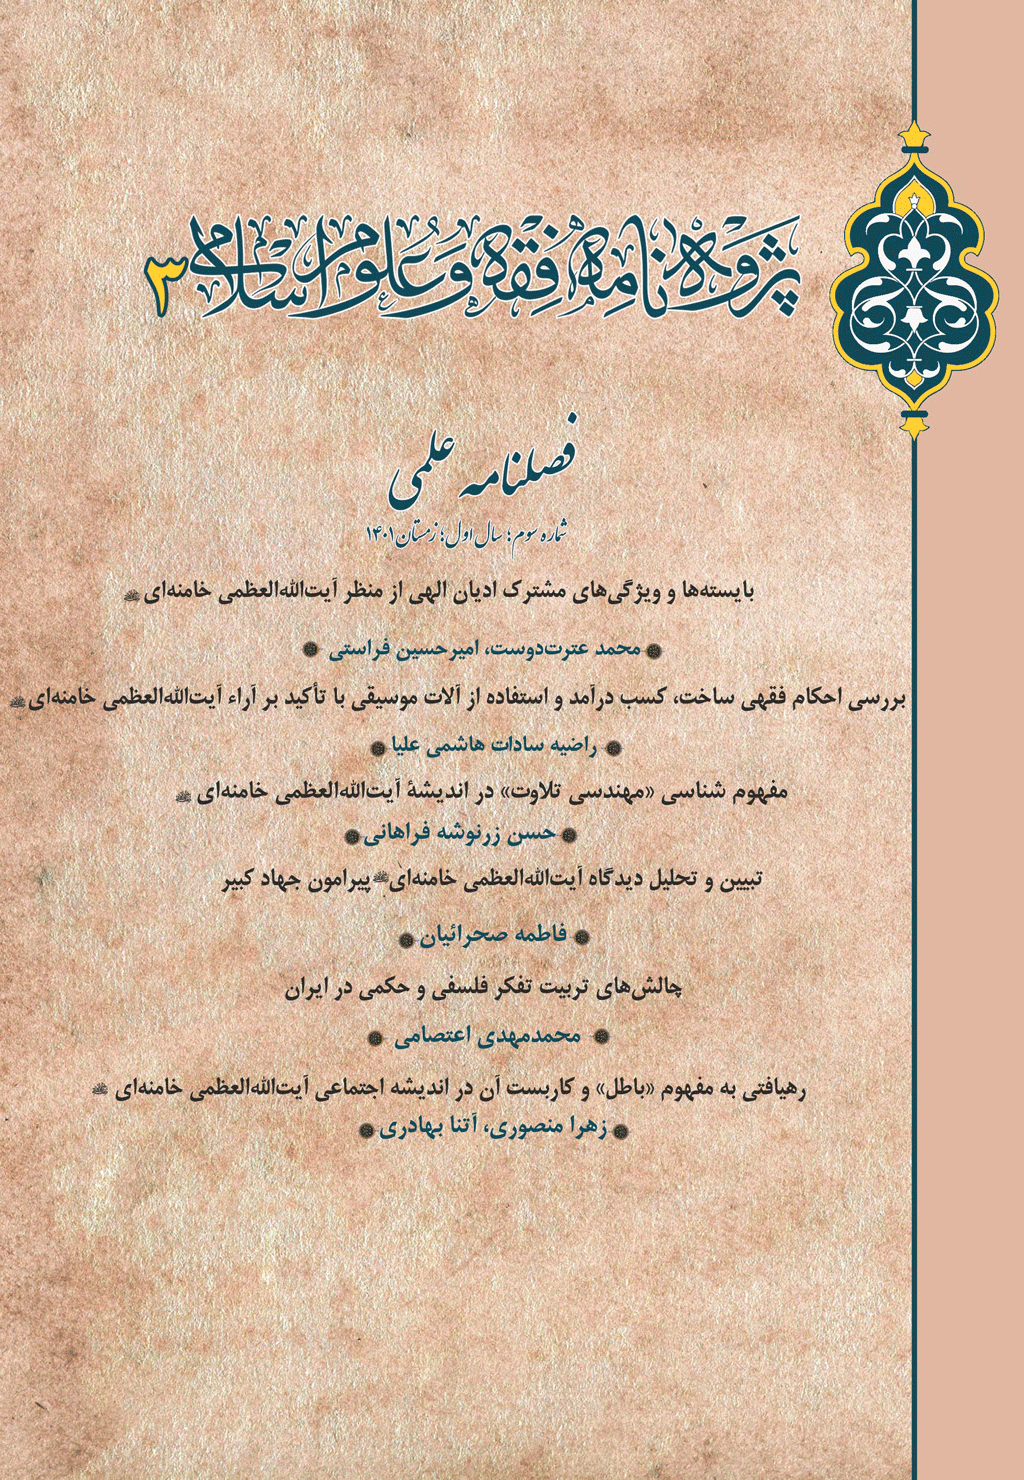 پژوه نامه فقه و علوم اسلامی - پاییز 1401 -  شماره 2